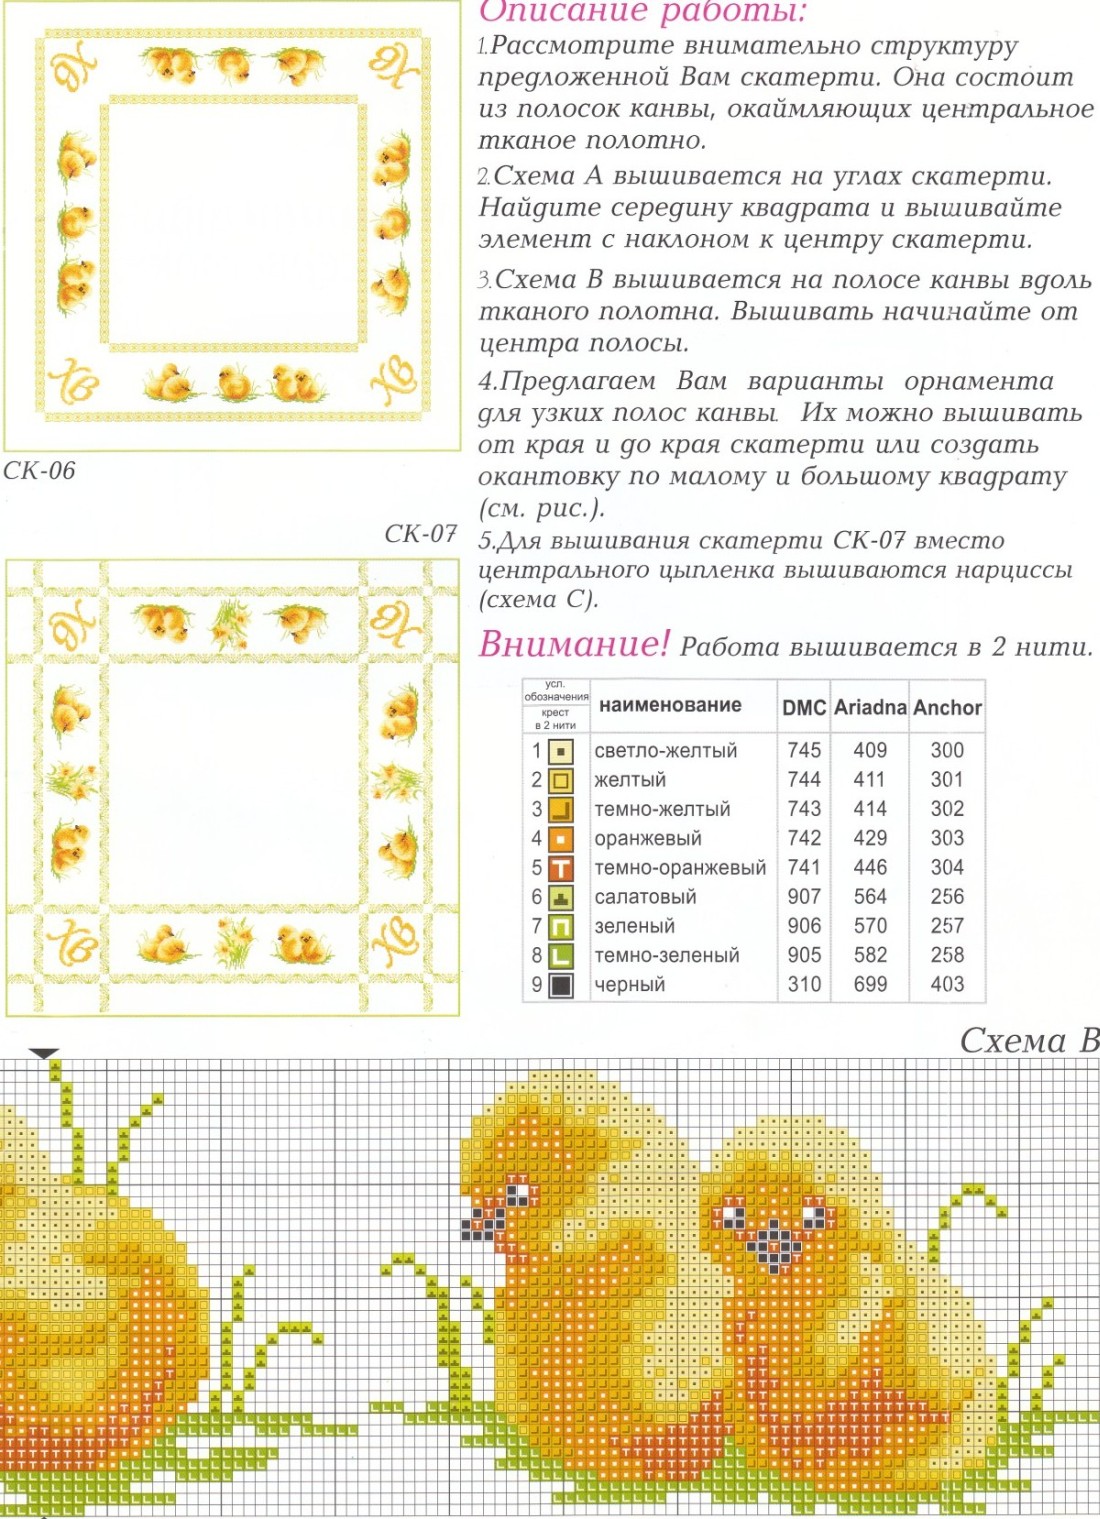 Цыпленок крючком схема и описание: Цыплята крючком - 19 бесплатных схем и описаний игрушек амигуруми